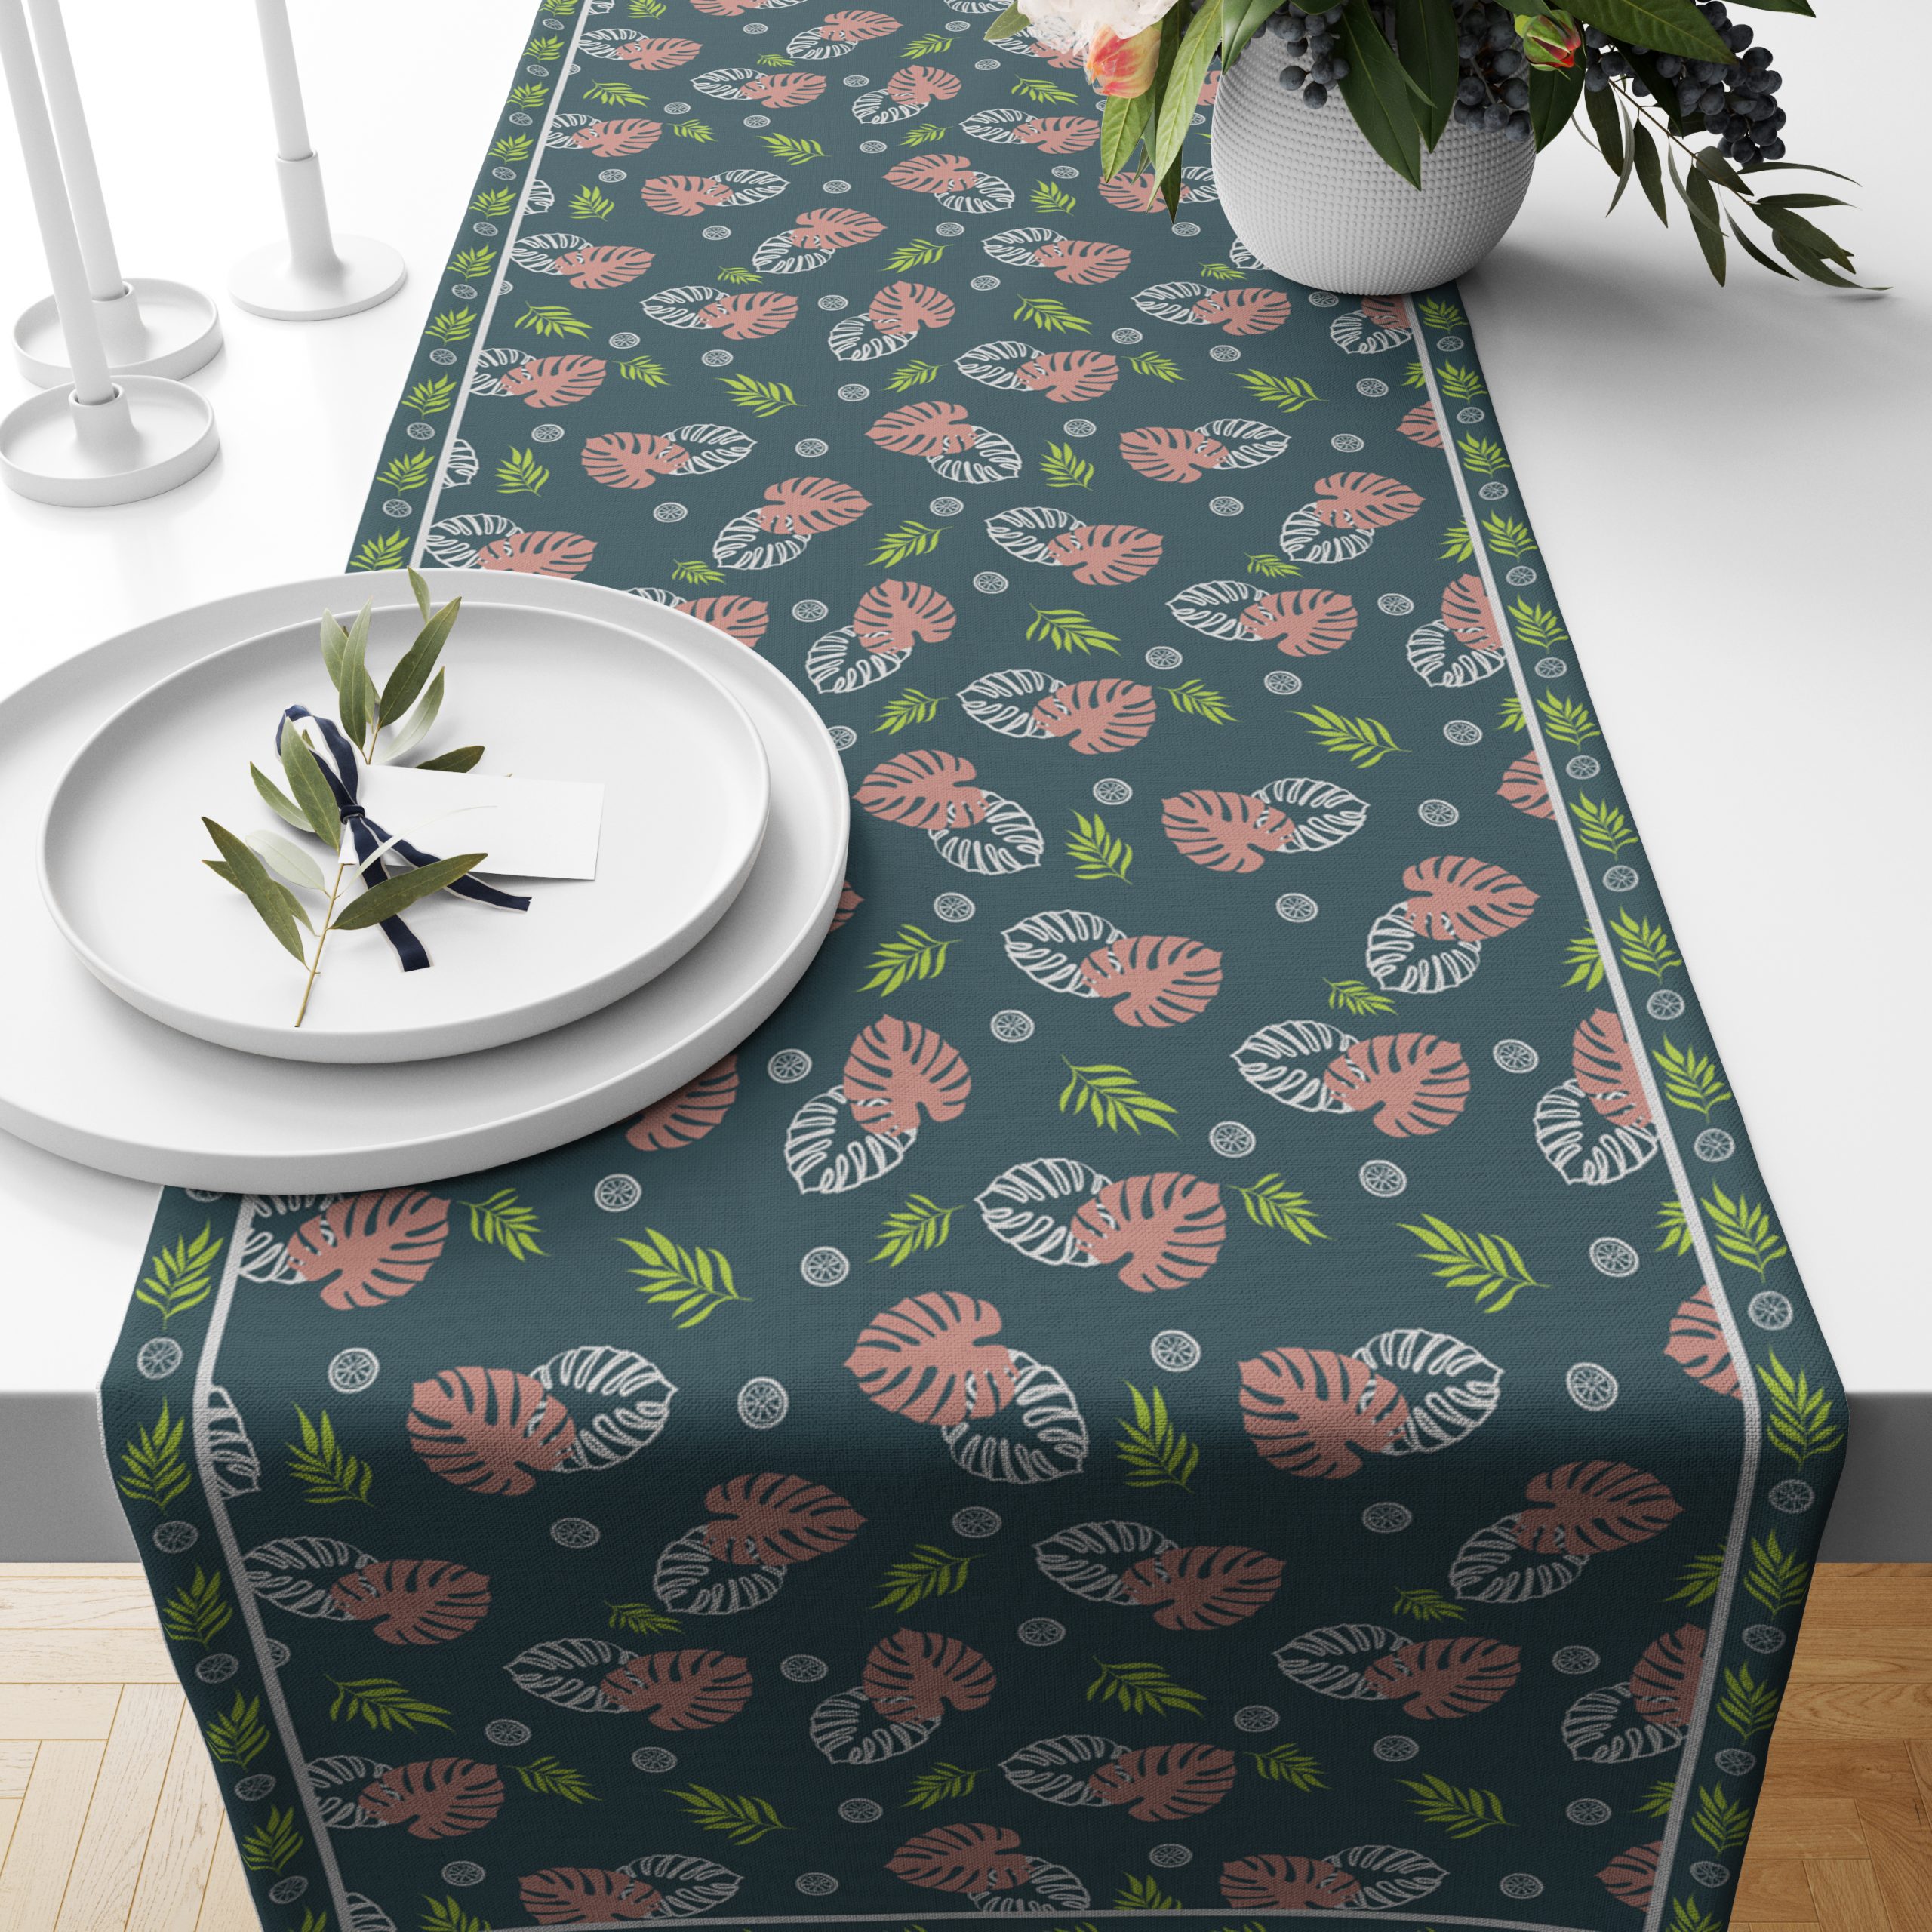 Tropical- Split Leaves | Table Runner/ Table Linen | Kitchen Linen